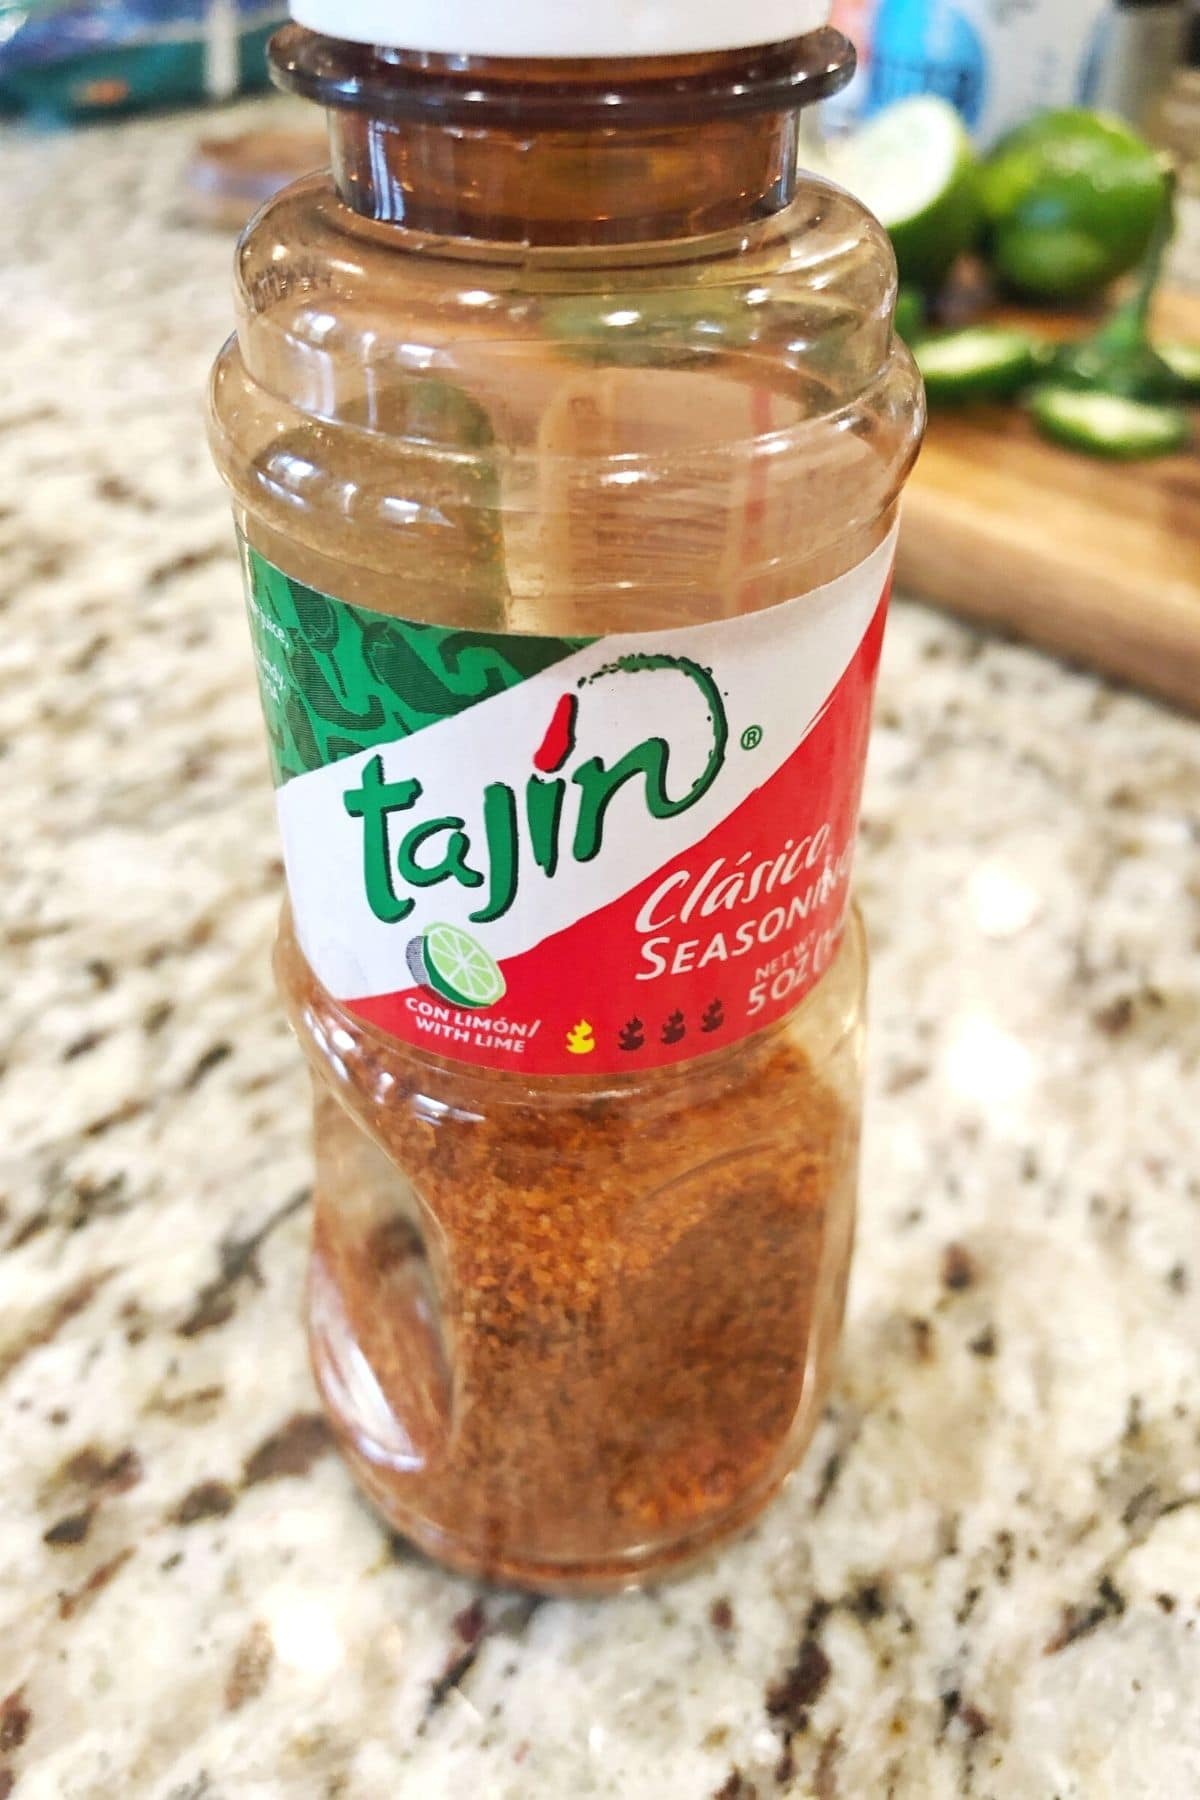 bottle of Tajin seasoning on a counter